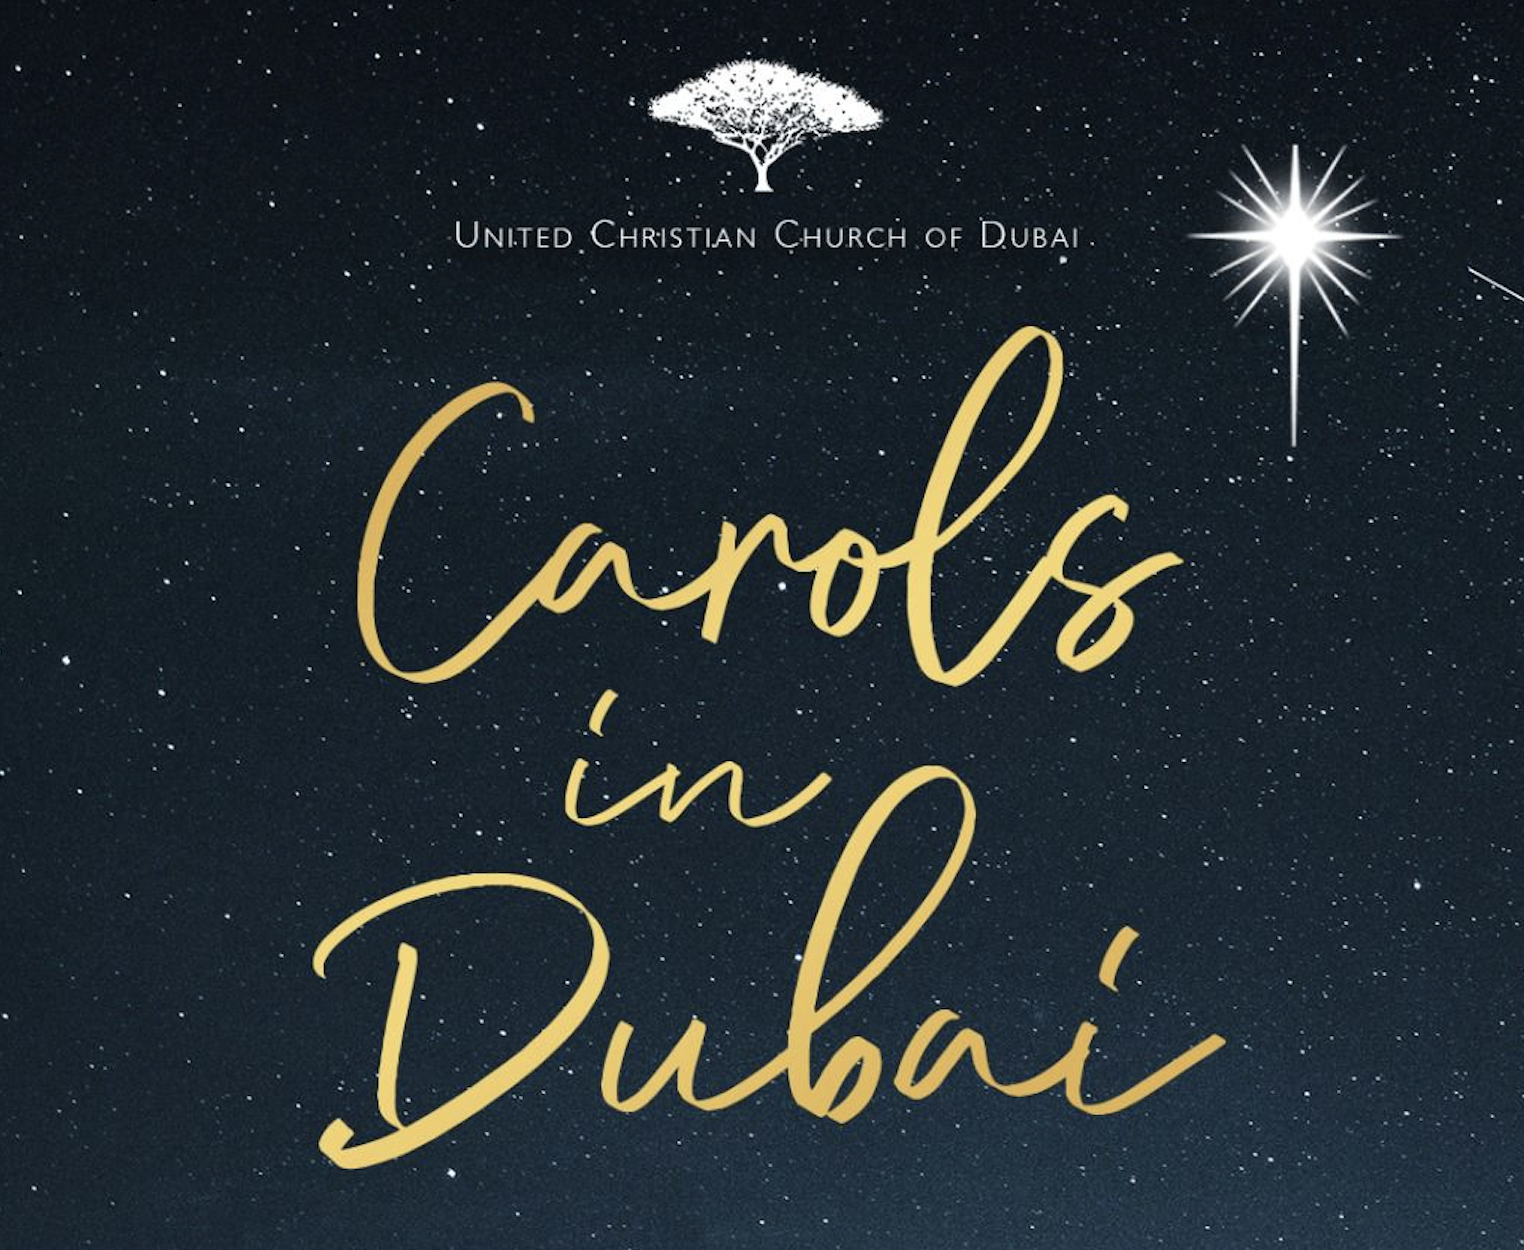 Carols in Dubai banner